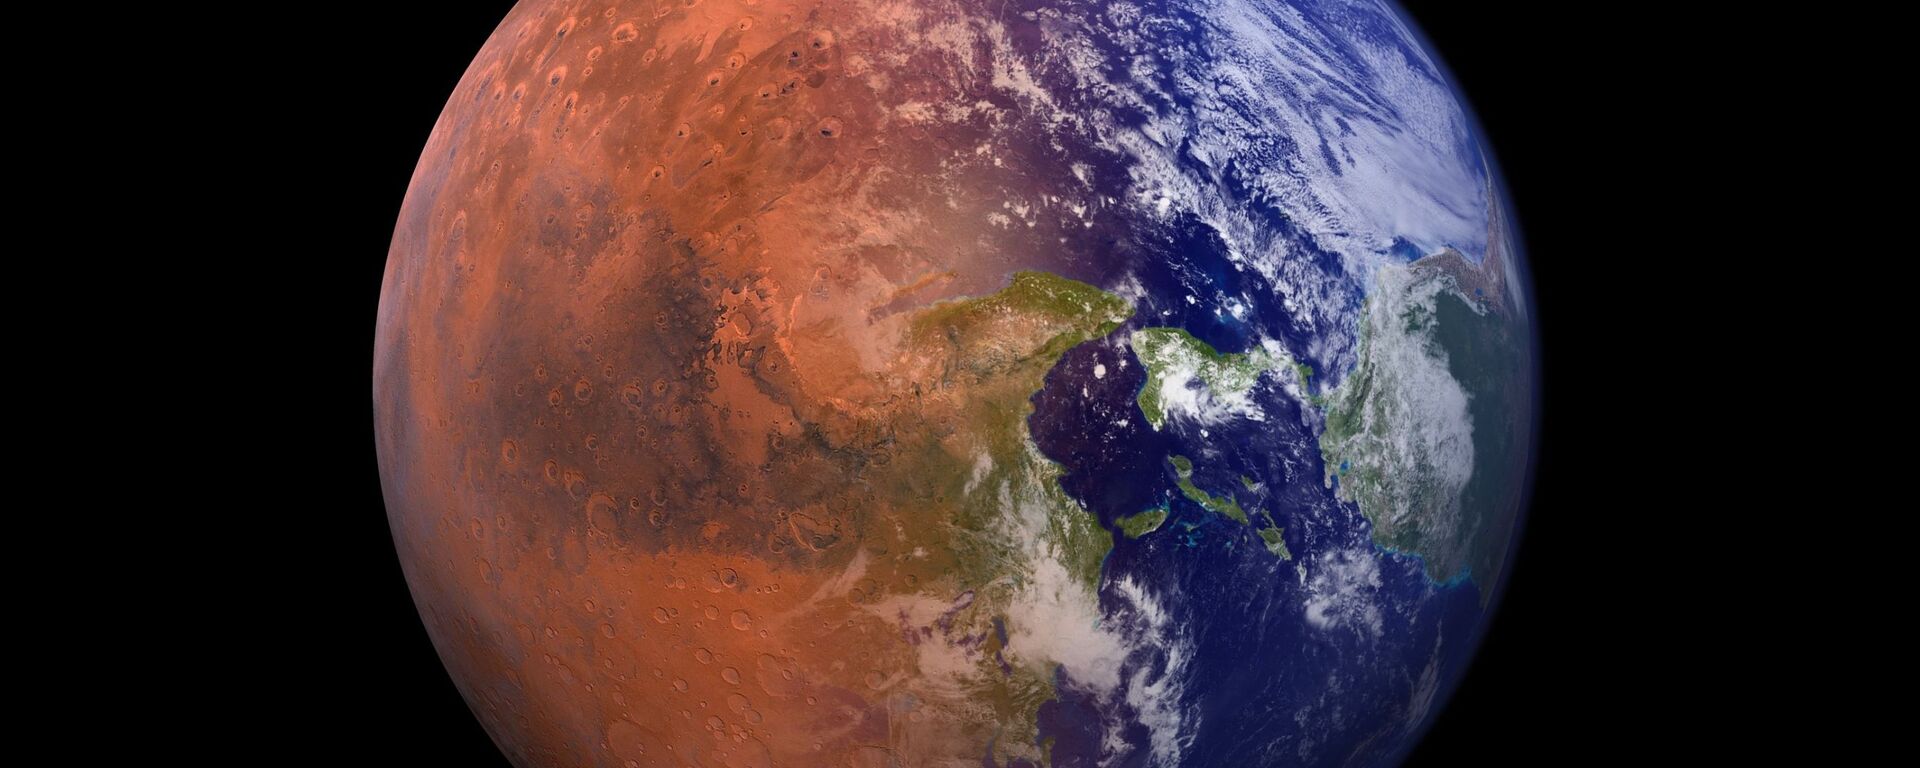 صورة خيالية تجمع كوكب الأرض مع نصف من كوكب المريخ  - سبوتنيك عربي, 1920, 16.10.2021